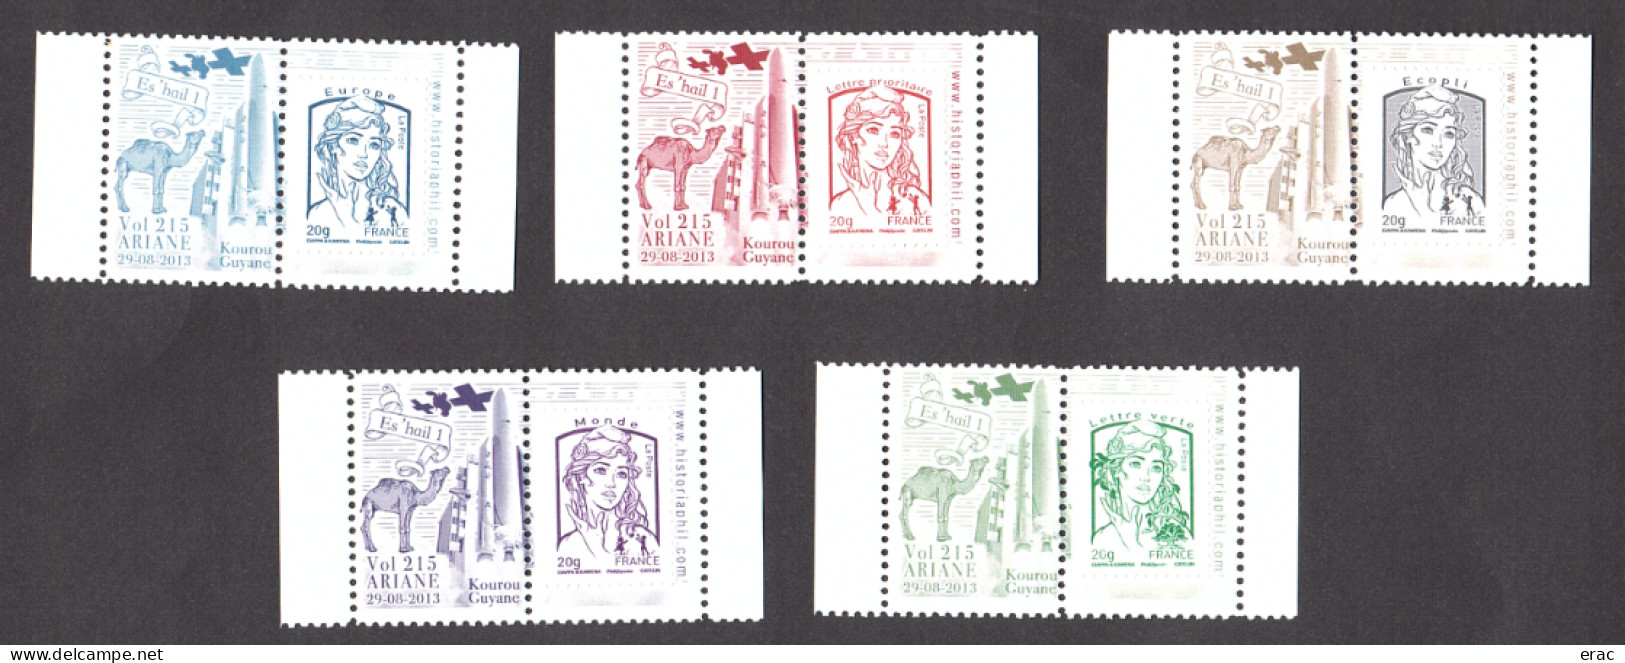 5 Porte-timbres Gommés - 2013 Ariane Vol 215 - Es'hail 1 - Avec TVP Marianne De Ciappa & Kawena Neufs - 2013-2018 Marianne (Ciappa-Kawena)